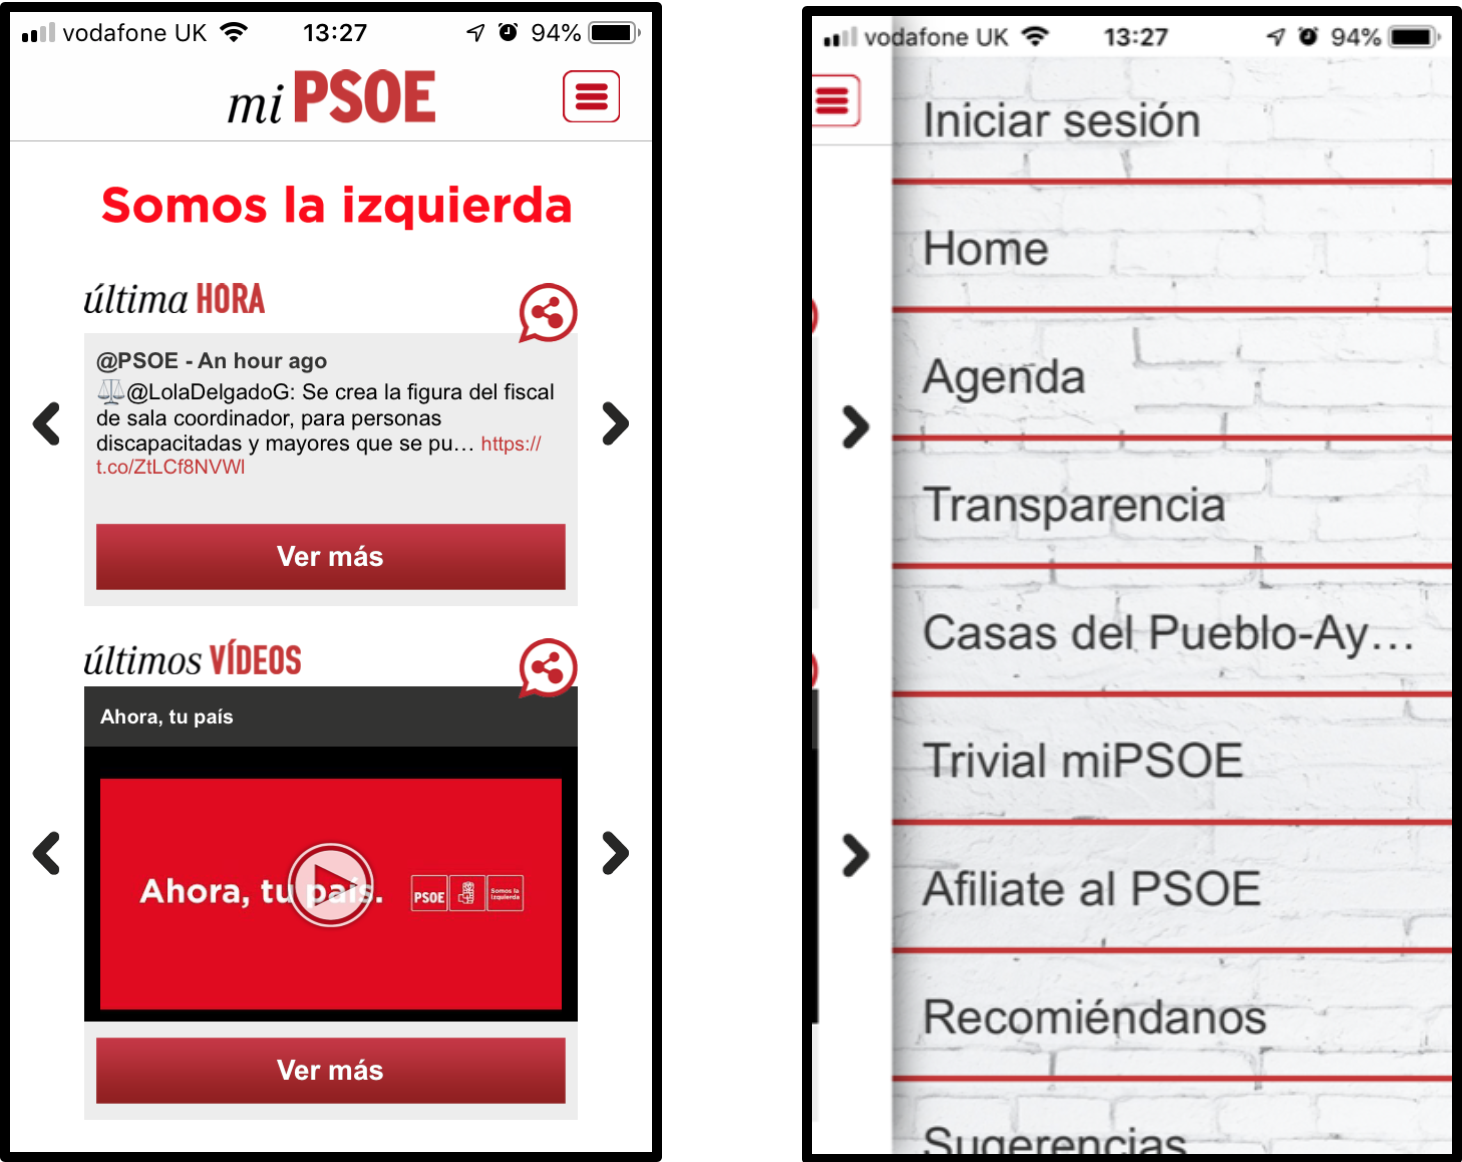 PSOE app